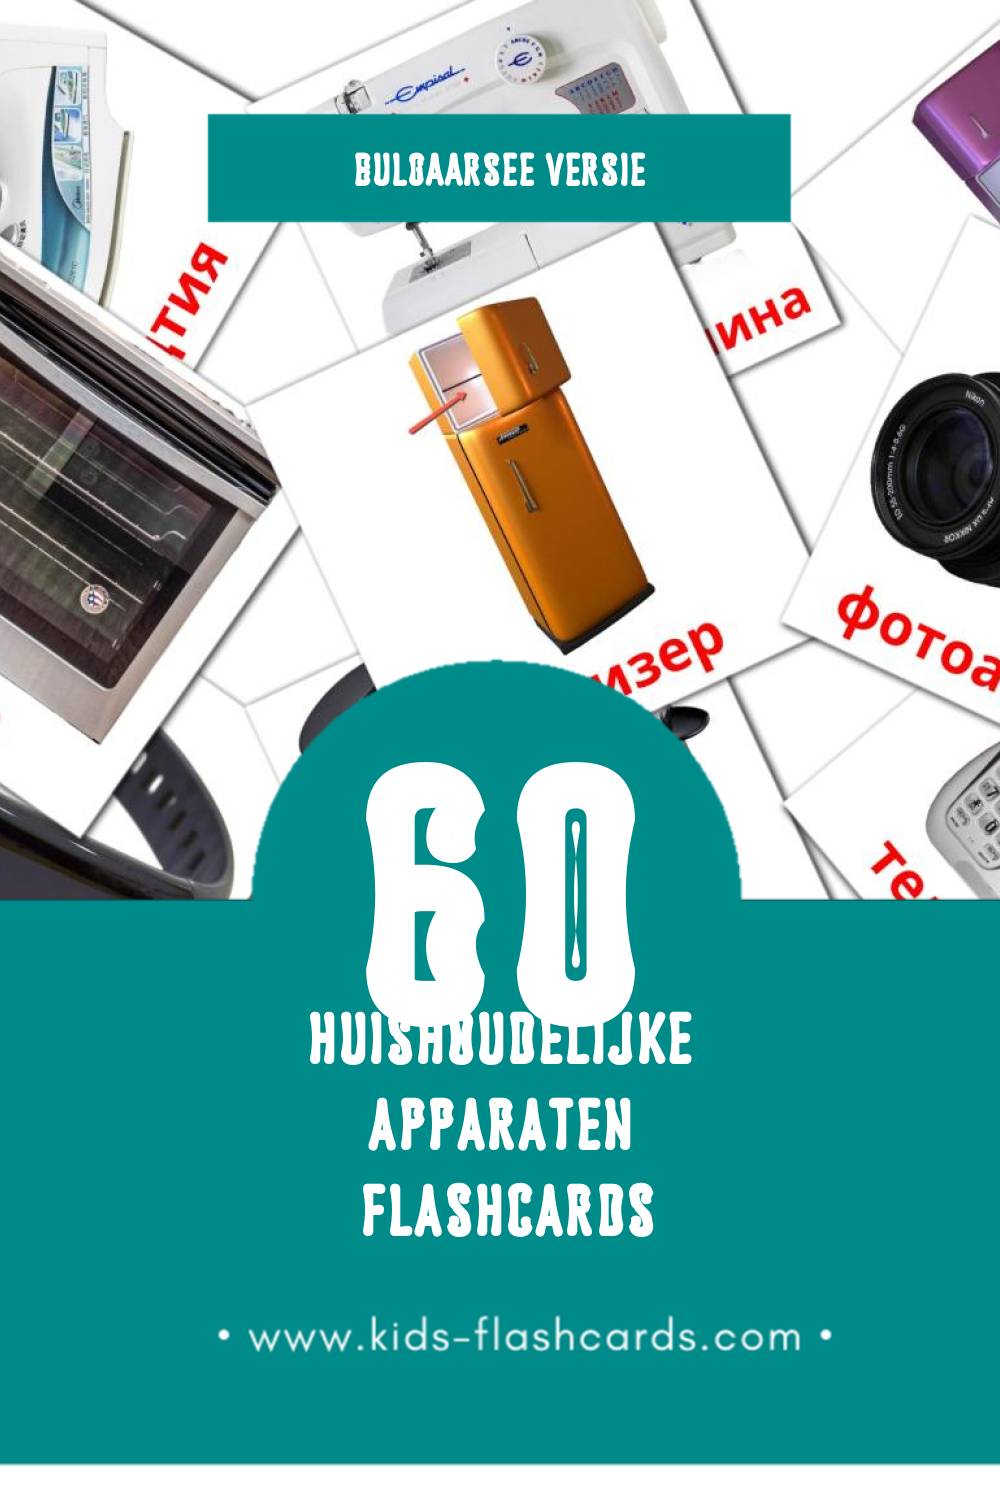 Visuele Уреди вкъщи Flashcards voor Kleuters (60 kaarten in het Bulgaarse)